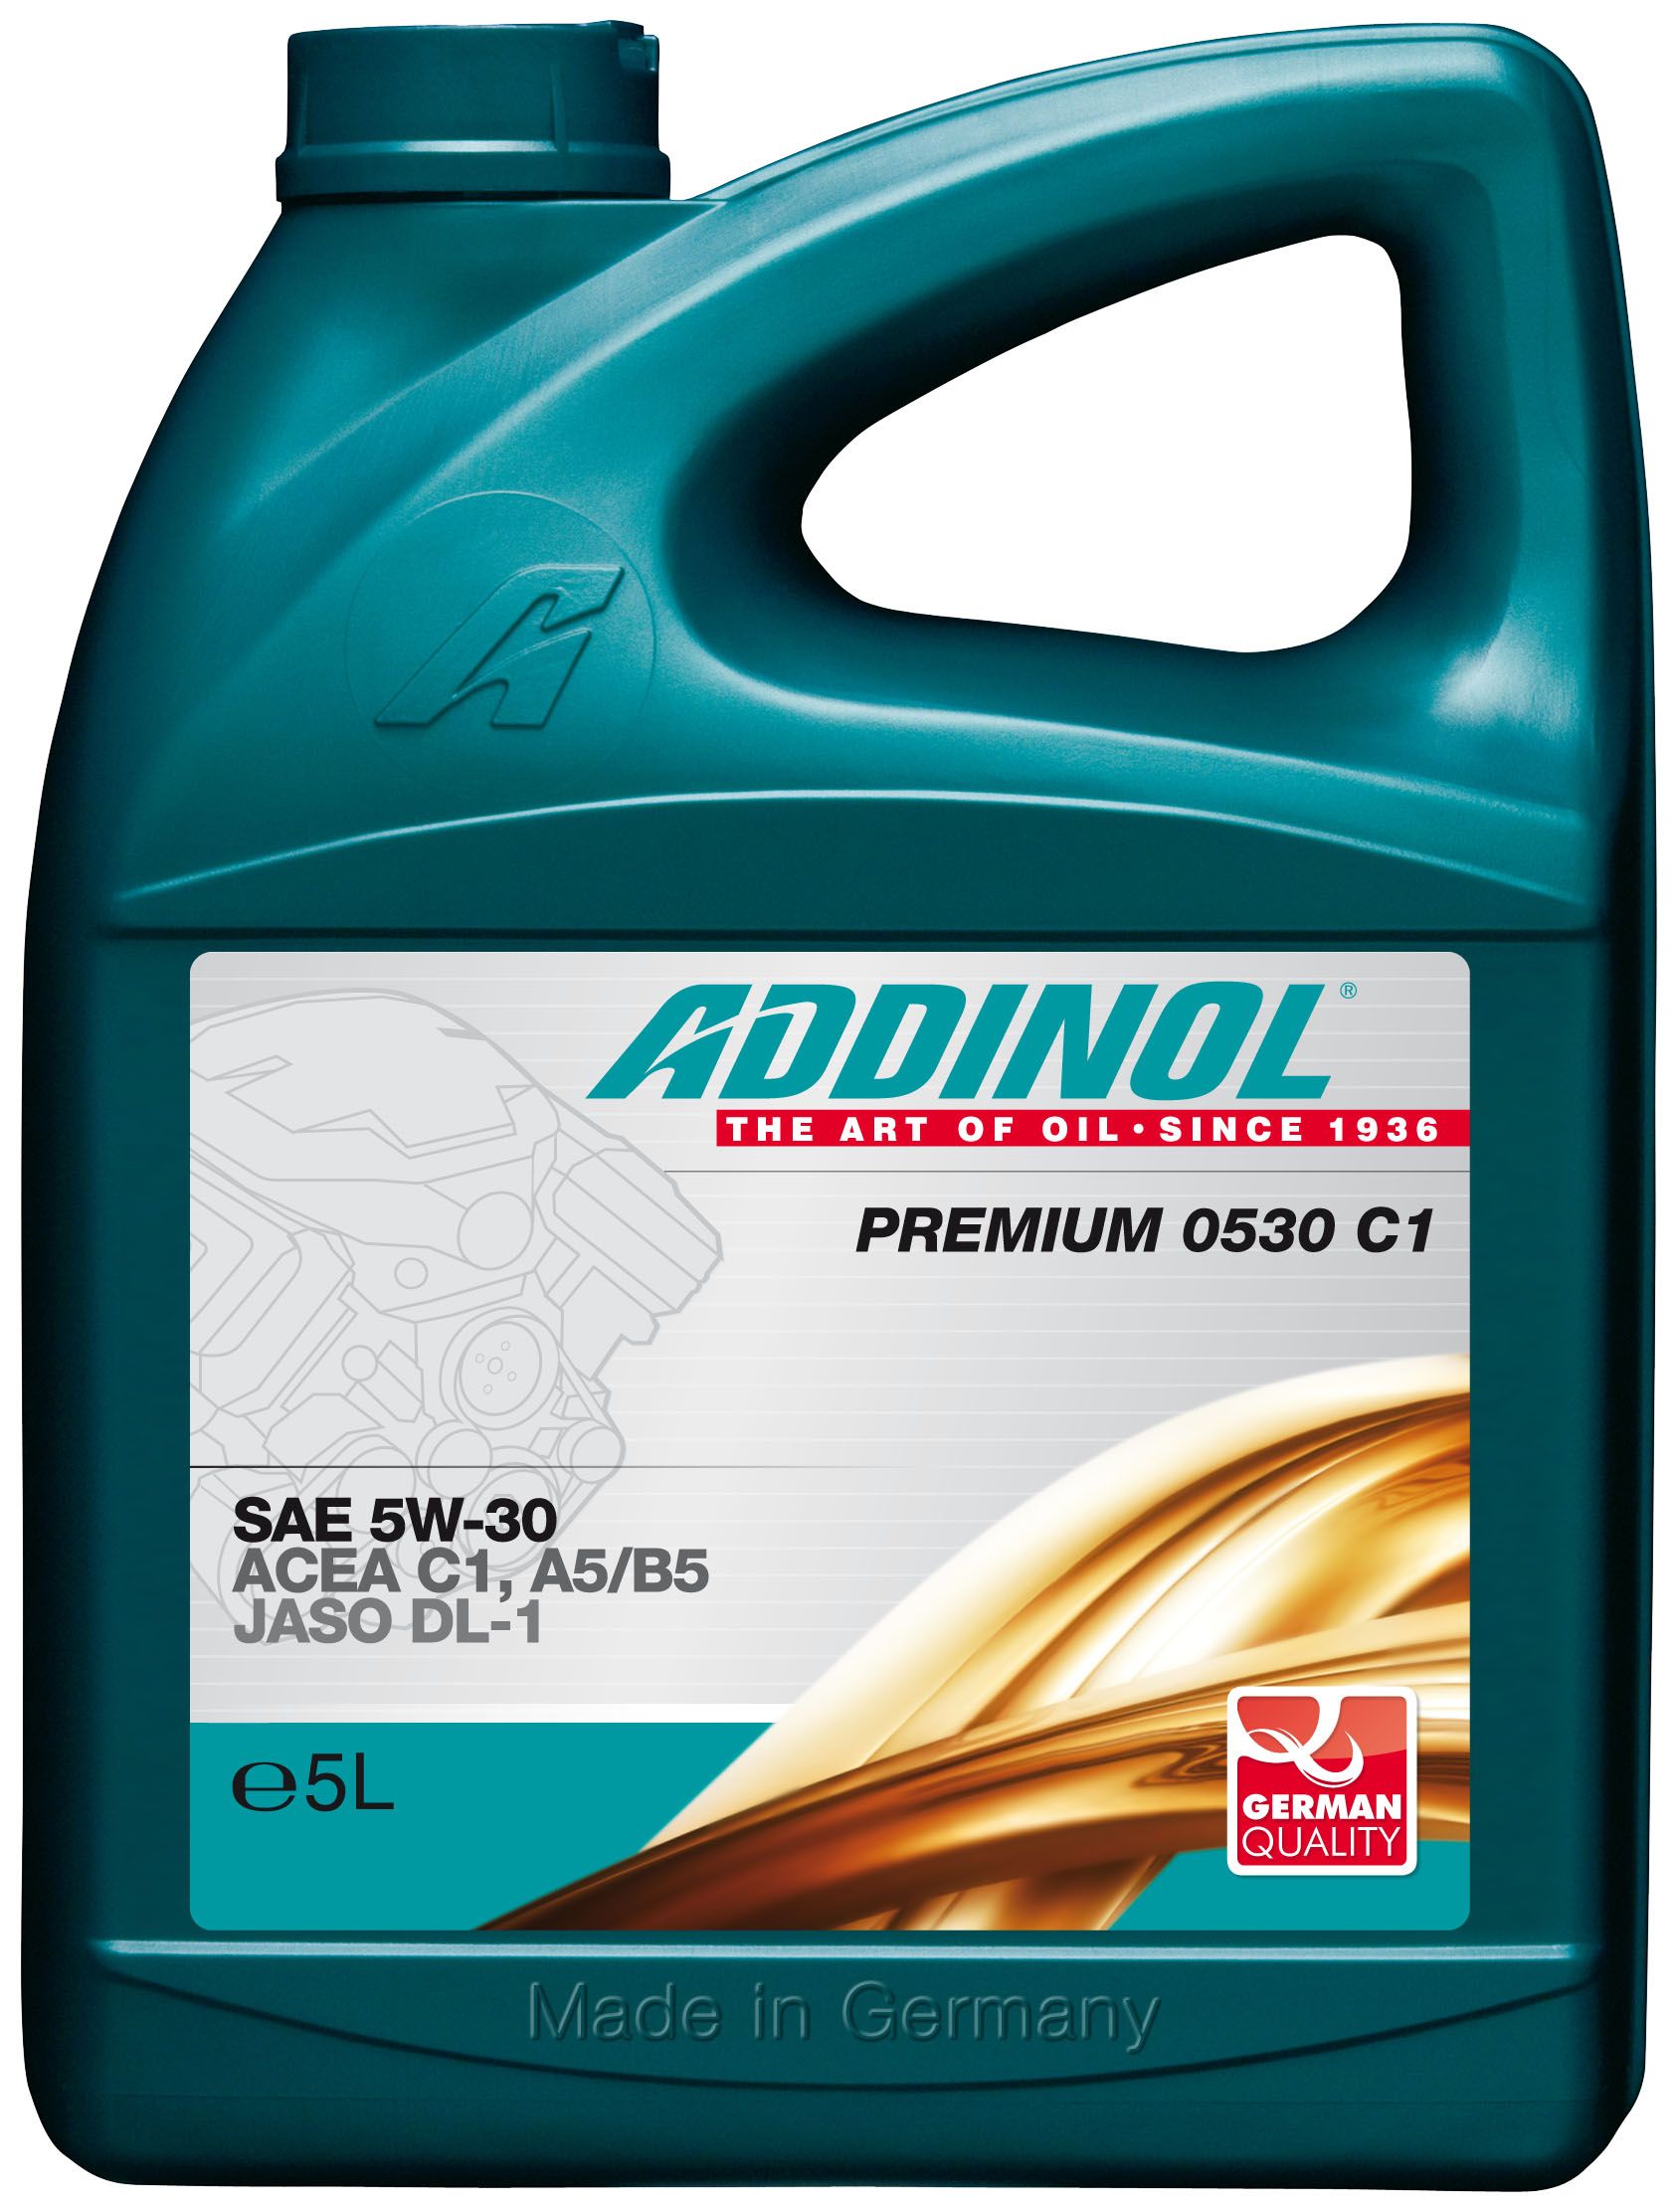 Addinol 4014766241108 масло моторное синтетическое "Giga Light (Motorenol) MV 0530 ll 5w-30", 5л. Addinol Premium 0530 c3-DX 5w-30 5л. Addinol Diesel Longlife MD 1548 (SAE 15w-40). Addinol Semi Synth 1040.